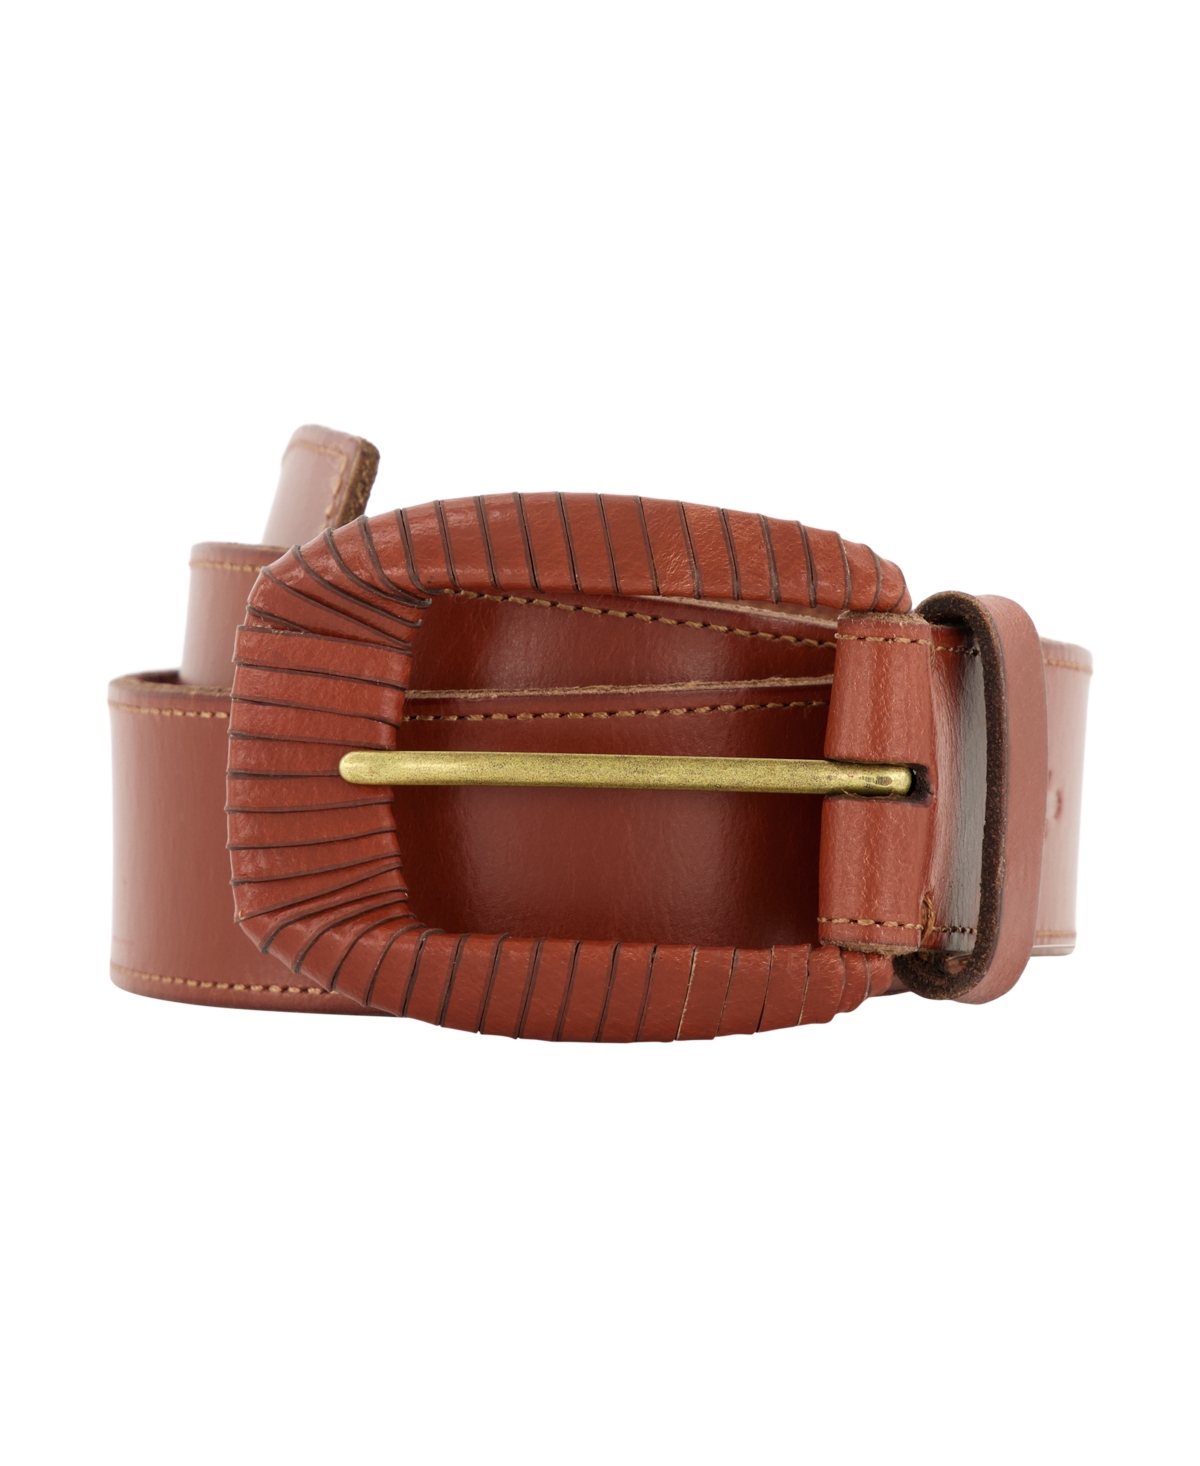 Women's 35mm Wrapped Buckle Leather Belt - Tan